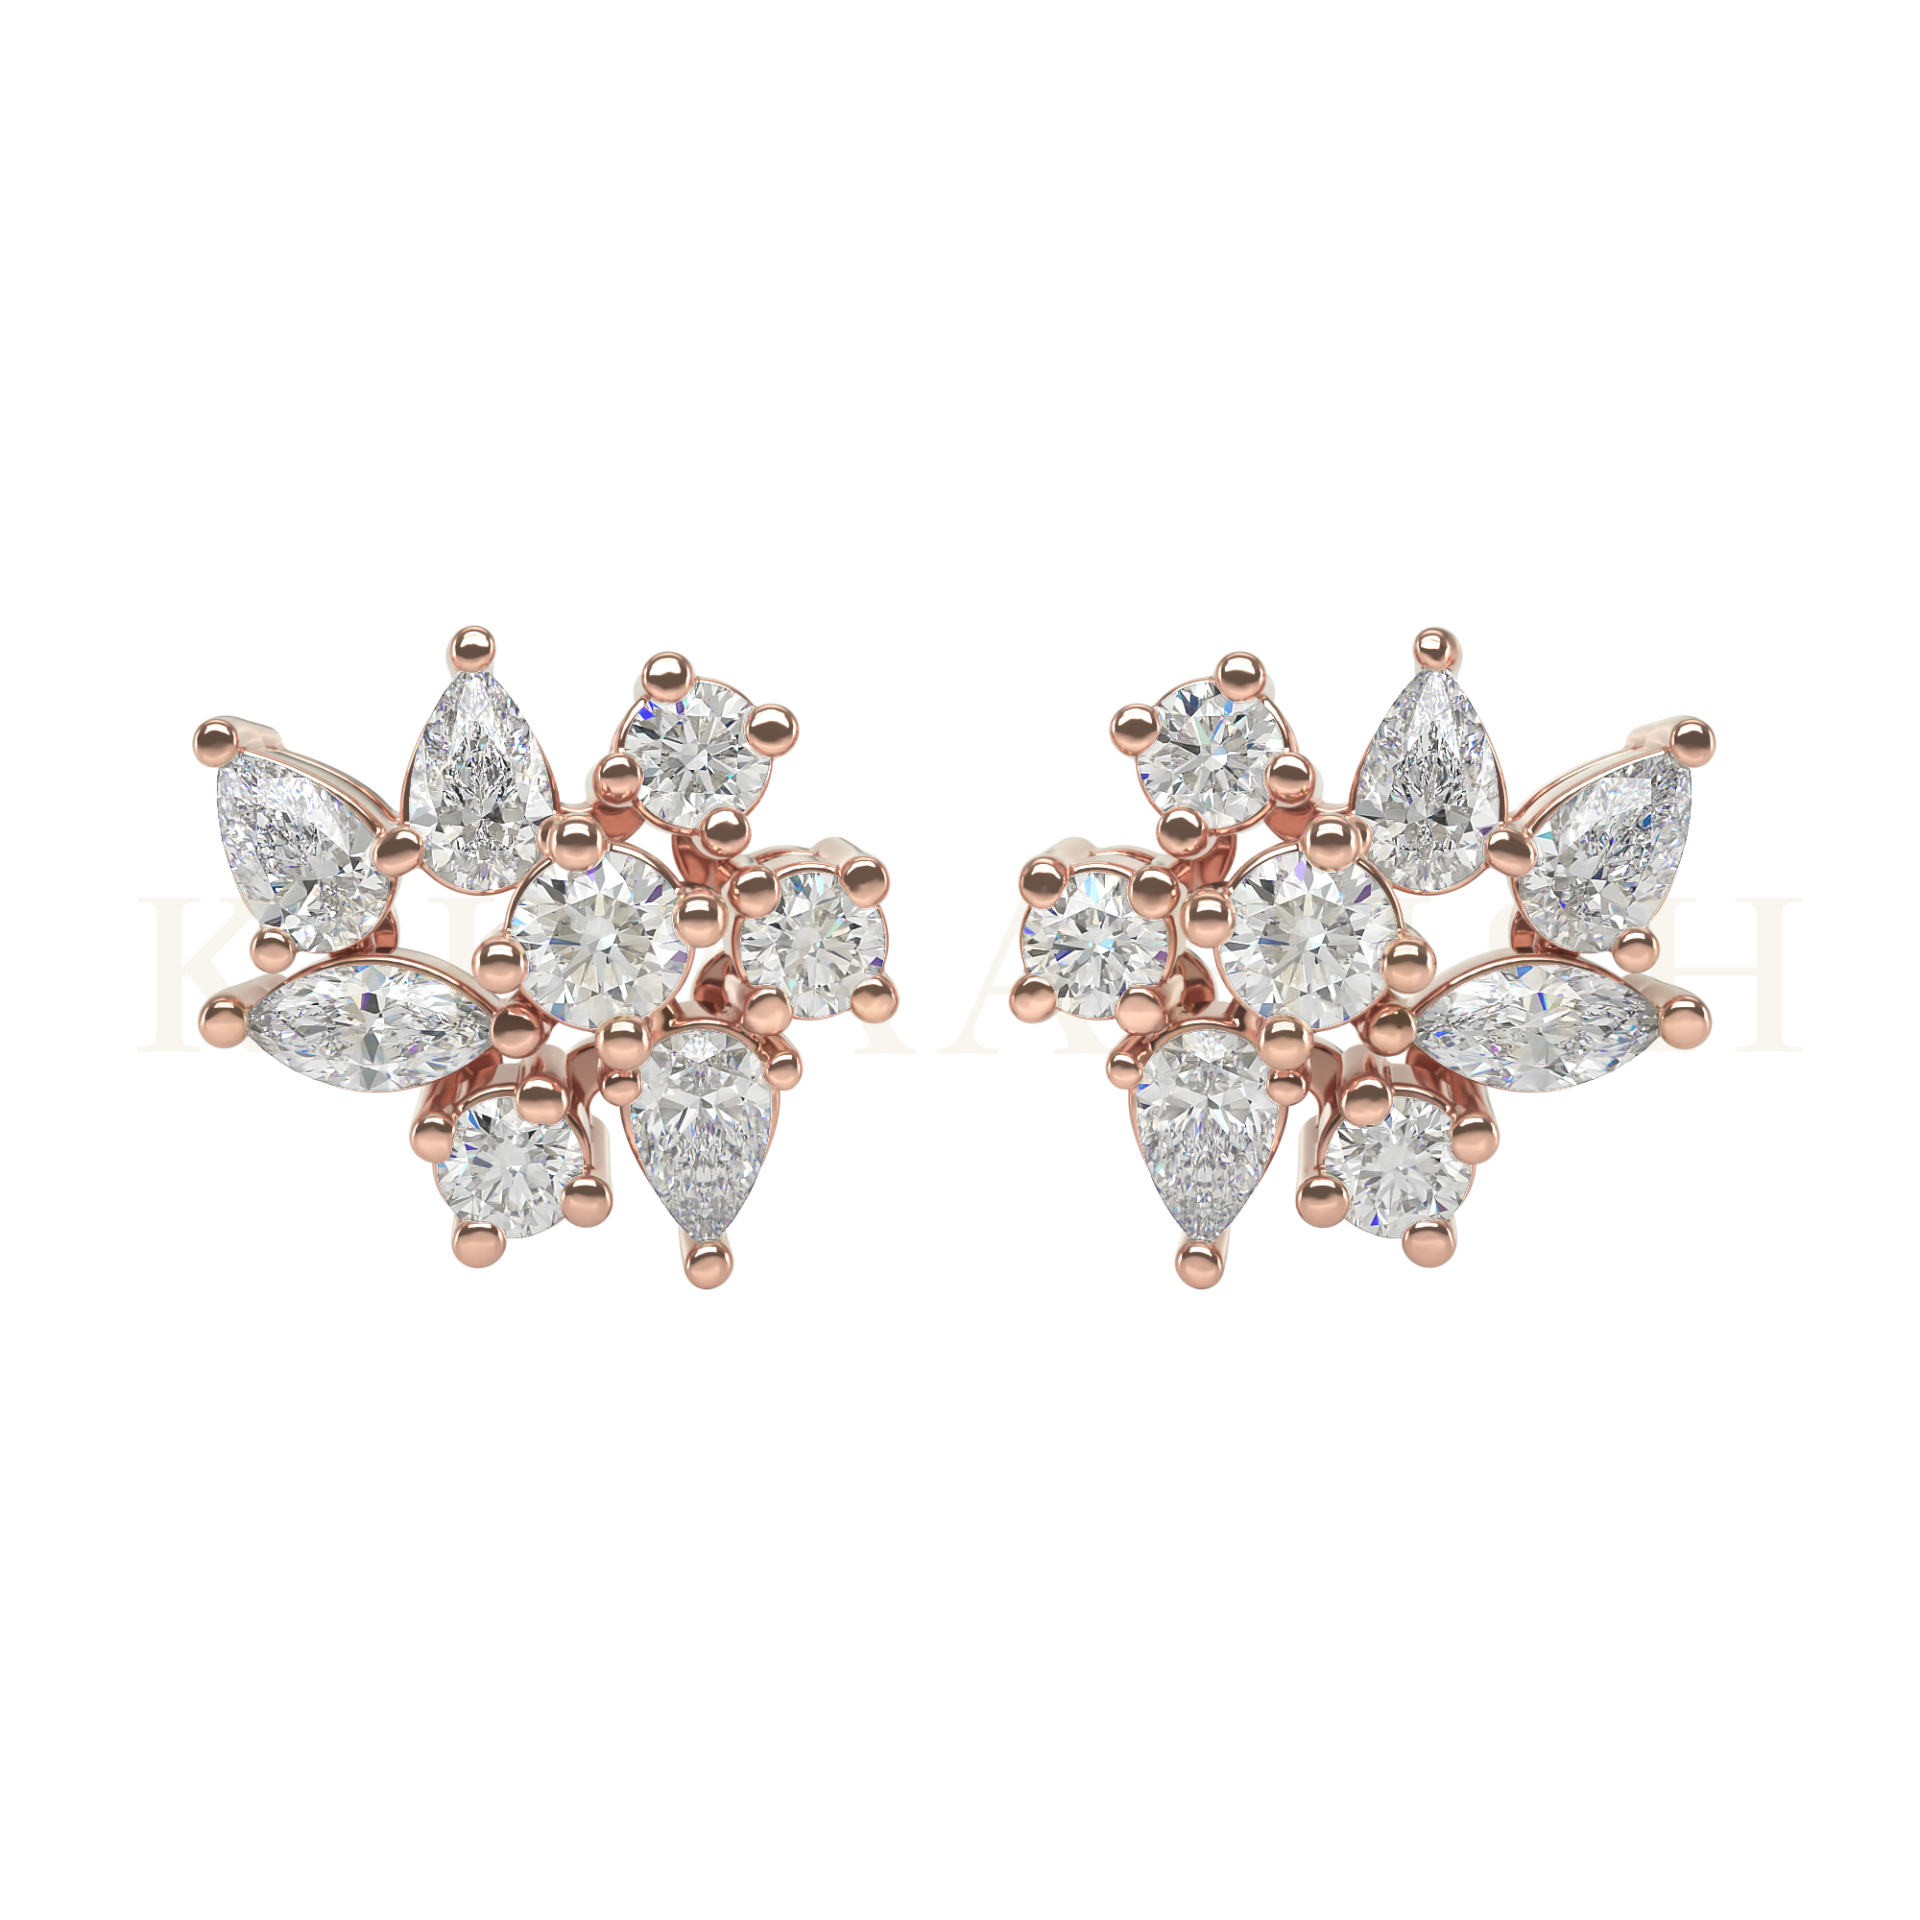  A pair of Oozing Elegance Diamond Earrings from Khwaahish.